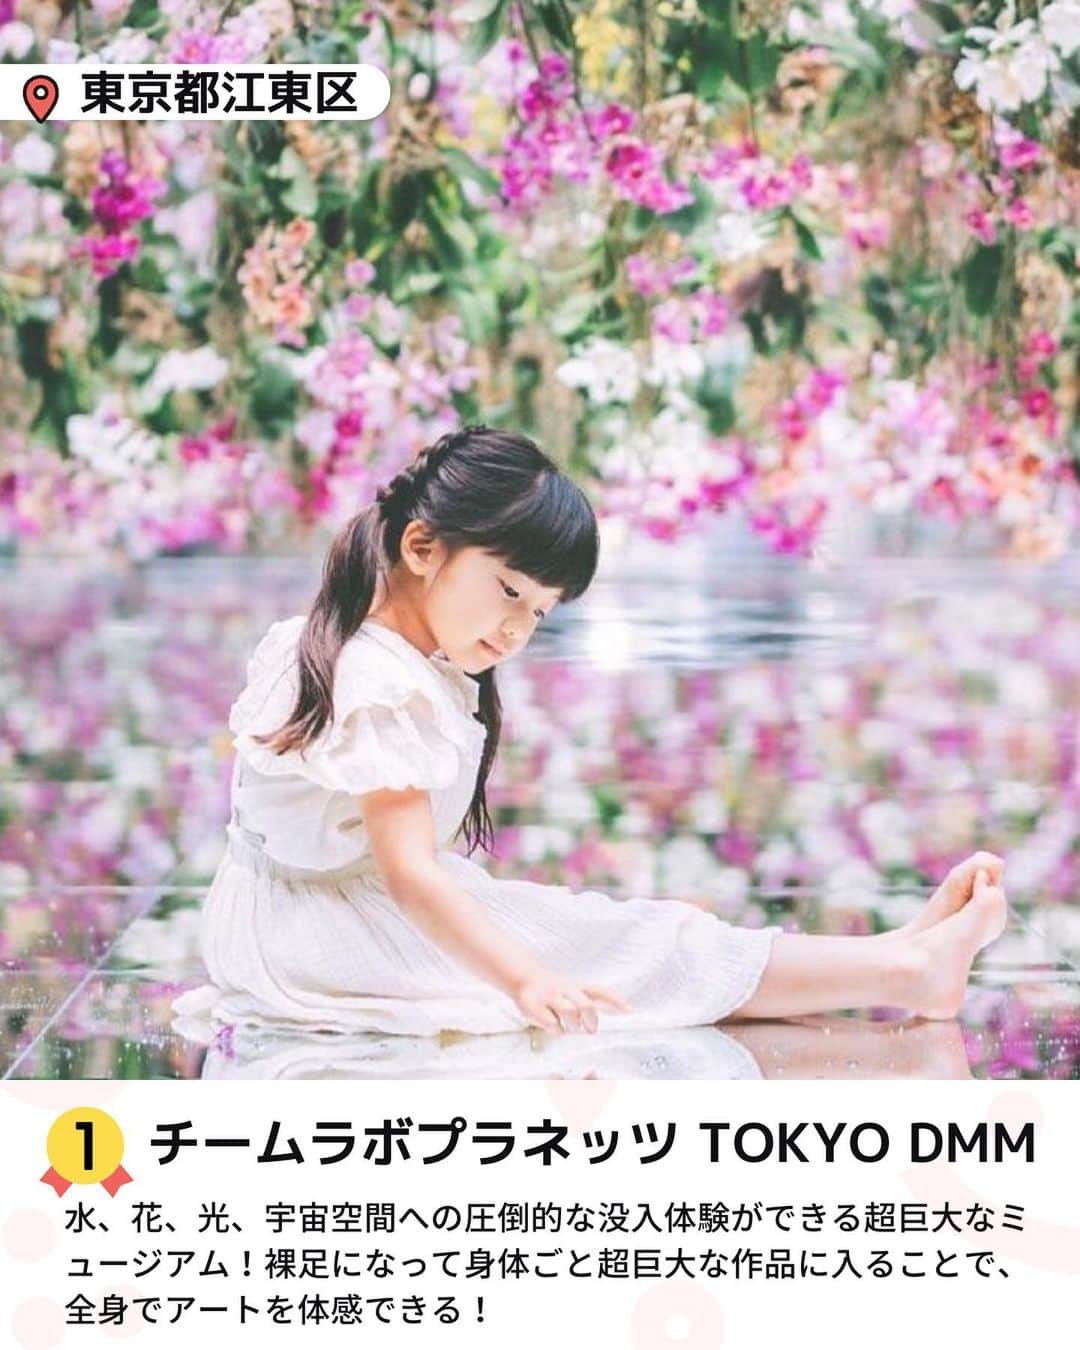 iko-yo（いこーよオフィシャル）さんのインスタグラム写真 - (iko-yo（いこーよオフィシャル）Instagram)「今回ピックアップしたのは「関東のおでかけ人気ランキングTOP5」 ーーーーーーーーーーーーーーーーーー 【 #チームラボプラネッツ TOKYO DMM】 @teamlab.planets 🌈 おすすめポイント🌈 水、花、光、宇宙空間への圧倒的な没入体験！親子で楽しめる超巨大なミュージアム。  📍住所 東京都江東区豊洲6-1-16  ⏰営業時間 <10月-1月> 全日9:00〜22:00 ※最終入館は閉館の1時間前  🎡定休日 12月7日(木)、2024年1月11日(木)  🚗アクセス ・電車の場合 ①新豊洲駅より徒歩1分(ゆりかもめ東京臨海新交通臨海線) ②豊洲駅、ららぽーと豊洲より徒歩10分(東京メトロ有楽町線) ③市場前駅、豊洲市場より徒歩5分(ゆりかもめ東京臨海新交通臨海線)  【 #モビリティリゾートもてぎ】 @motegi_official 🌈 おすすめポイント🌈 「森感覚アスレチッック DOKIDOKI」は、子どもだけでなく親子で全身を使って木登り型のアスレチックに挑戦できます！  📍住所 栃木県芳賀郡茂木町桧山120-1  ⏰営業時間 曜日・季節により異なりますの公式HPをご確認ください。  🎡定休日 詳しくは公式HPをご確認下さい。  🚗アクセス ・電車の場合 JR東北本線宇都宮駅よりモビリティリゾートもてぎ行きバスにて約90分、モビリティリゾートもてぎバス停下車徒歩すぐ  ・車の場合 北関東自動車道真岡ICより約50分 常磐自動車道水戸ICより約40分  【#PLAY! PARK ERIC CARLE】 @play_park_eric_carle  🌈 おすすめポイント🌈 エリック・カールの描く絵本の世界観をテーマとした、国内初のインドアプレイグラウンド施設です。  📍住所 東京都世田谷区玉川2-21-1  ⏰営業時間 【平日】10:00〜20:00 【休日・特定期間】3部入替制 <1部>受付開始10:00  終了時間12:30 <2部>受付開始13:00  終了時間15:30 <3部>受付開始16:00  終了時間20:00 ※第3部は営業終了時間までお楽しみいただけます。 ※すべての部、一時退出・再入場が可能です。  🎡定休日 二子玉川ライズ・ショッピングセンター休館日に準じます。  🚗アクセス ・電車の場合 東急田園都市線・大井町線「二子玉川駅」直結 ・駐車場、駐輪場利用の場合 二子玉川ライズ・ショッピングセンターの共同駐車場・駐輪場をご利用ください。 ※パークに有料でご入場の際は、3時間無料駐車サービスが利用できます  【 #浅草花やしき】 @hanayashiki1853 🌈 おすすめポイント🌈 0歳からでもご乗車いただけるアトラクションも多く、遊園地デビューにぴったり♪  📍住所 東京都台東区浅草2-28-1  ⏰営業時間 10:00〜18:00 ※季節・天候・諸般の事情によって変動しますので、詳しくはHPをご覧下さい。 ※最終入園は閉園30分前までです。  🎡定休日 不定休 ※詳しくは公式HPをご確認下さい。  🚗アクセス ・電車の場合 東京メトロ銀座線、都営地下鉄浅草線、東武スカイツリーライン各「浅草駅」より徒歩約5分、つくばエクスプレス浅草駅より徒歩3分 ・車の場合 首都高速上野線入谷ICより約1km  【#namcoトンデミ横須賀　コースカベイサイドストアーズ店】 @tondemi_namco 🌈 おすすめポイント🌈 家族や友達同士など誰と来ても楽しめる！世界中から集めた最新アクティビティが盛りだくさん！  📍住所 神奈川県横須賀市本町2-1-12 コースカベイサイドストアーズ 5F  ⏰営業時間 10:00〜21:00  🎡定休日 不定休  🚗アクセス 【電車の場合】 京急本線「汐入駅」より徒歩3分。 京急本線「横須賀中央駅」から徒歩10分。 【車の場合】 ※周辺ICからの車ルート ・本町山中有料道路 汐入町 下り入口：約1分 ・本町山中有料道路 汐入町 上り出口：約1分  ※トンデミご利用のお客様は3時間無料券をお渡しします。  ※2023年11月22日時点の情報です。最新の情報は公式HPをご確認下さい。 ーーーーーーーーーーーーーーーーーーー おでかけ情報量は日本最大級！ 子どもとお出かけ情報サイト「いこーよ」 「親子でおでかけしたい場所」をご紹介させていただいています！ お子さんとのおでかけの思い出の写真を、このアカウントをフォローの上#いこーよ #いこーよおでかけ部 をつけてぜひ投稿してください。魅力的な写真は、いこーよ公式SNSで紹介させていただきます！ 募集中タグ#いこーよ #いこーよおでかけ部 「子どもと行きたい！」と思ったら保存が便利！ プロフィールのURLから「いこーよ」のサイトに行くと、他の投稿やオトクな情報などが載っています♪ ☞ @ikoyo_odekake #いこーよ#お出かけ#おでかけ#お出かけスポット#子連れ#こどものいる暮らし#子連れスポット#東京旅行#東京ママ#東京観光#namco#トンデミ#遊園地#浅草花やしき#playparkeric#モビリティリゾート#チームラボ」11月22日 21時11分 - ikoyo_odekake